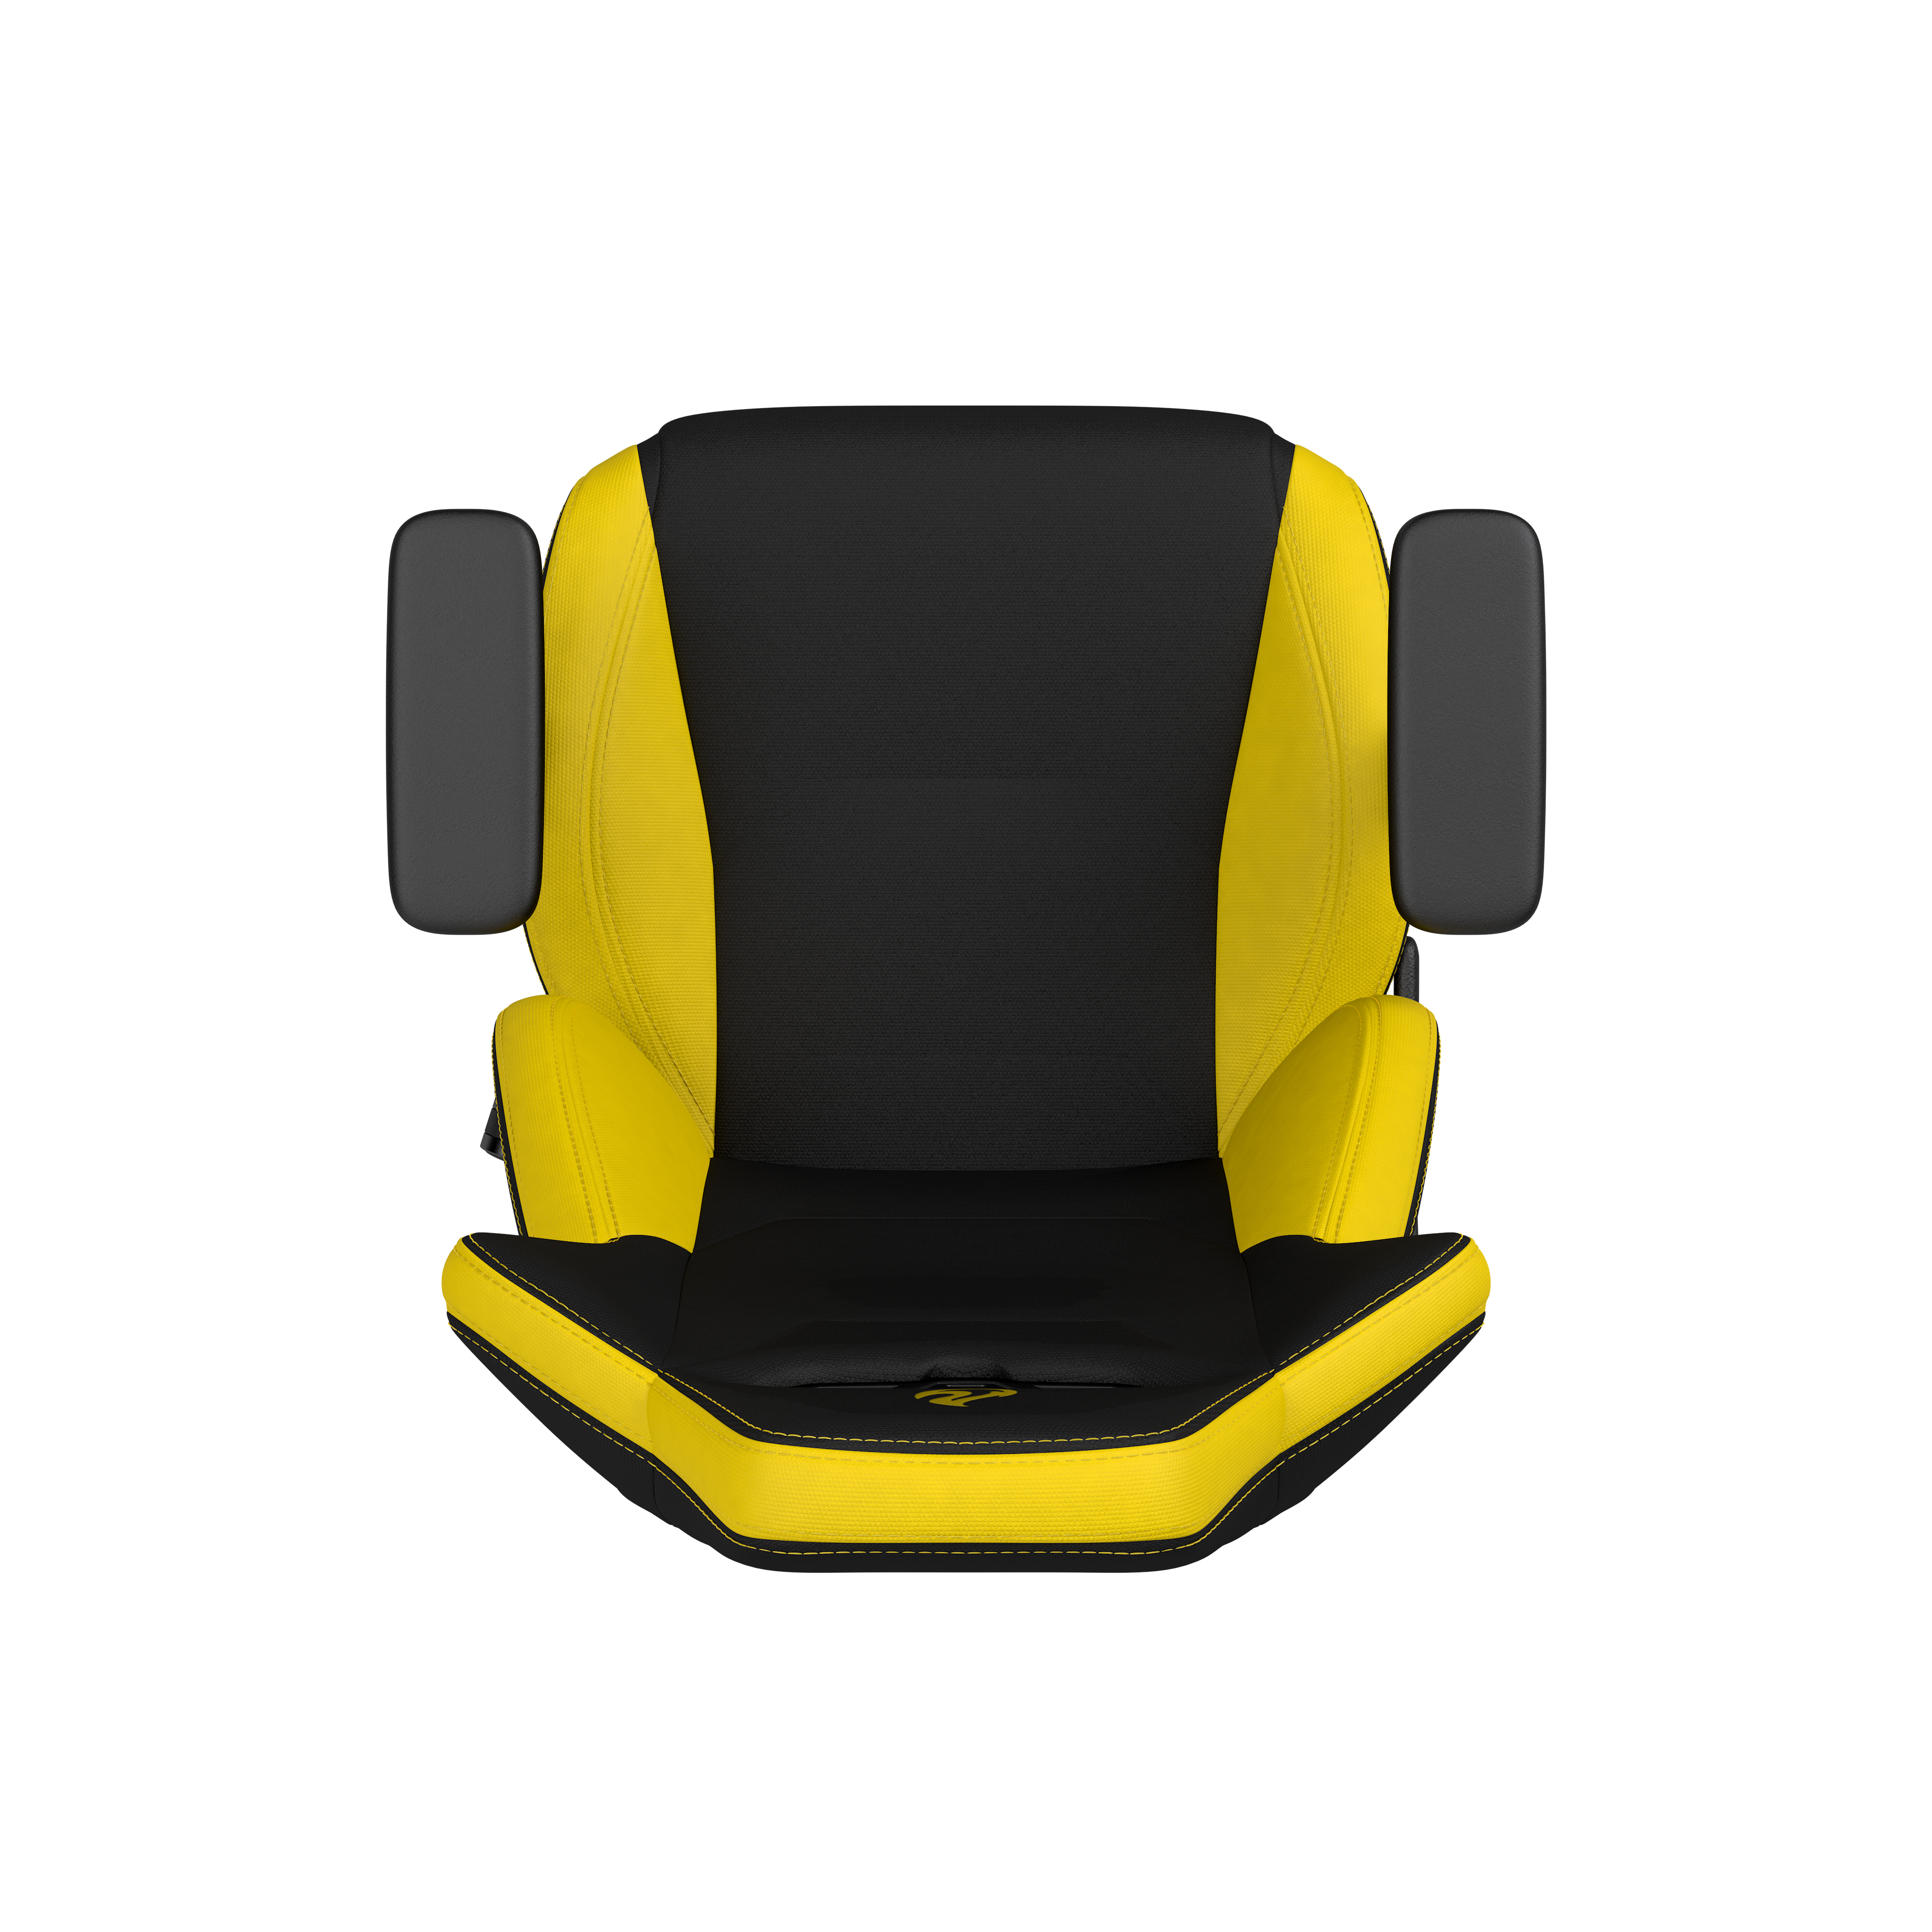 Nitro Concepts - Cadeira Nitro Concepts S300 Gaming Astral Yellow